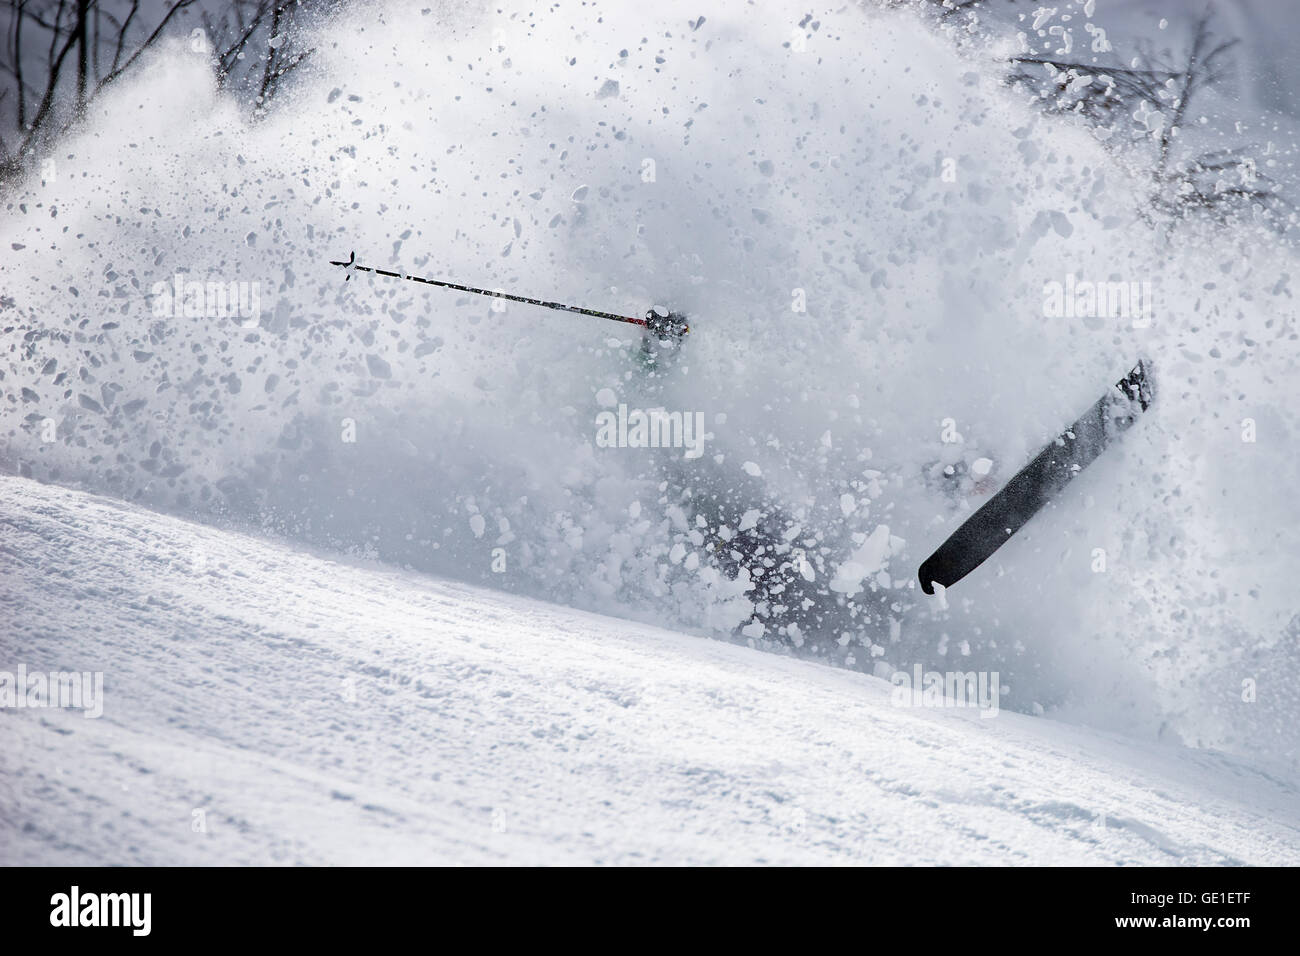 Skier falling over, Alps, Gastein, Austria Stock Photo